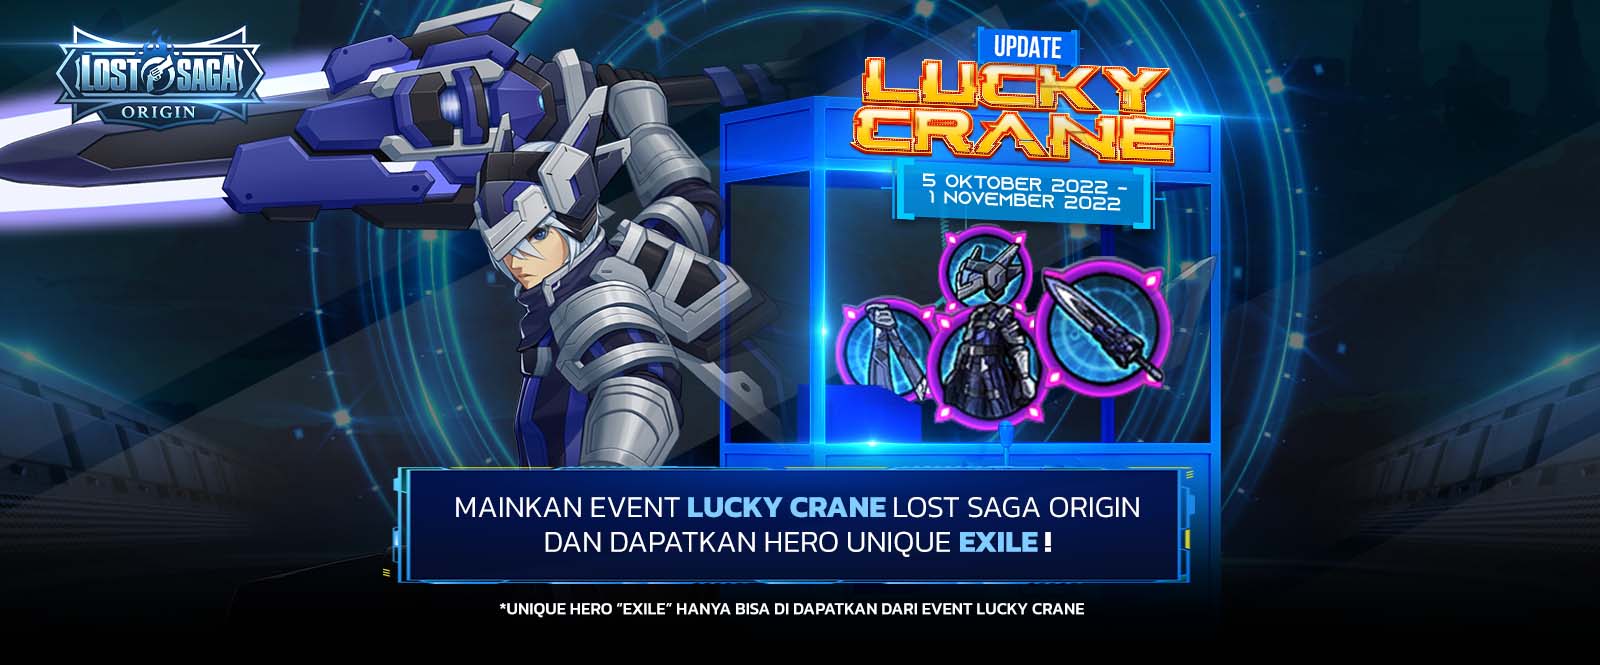 Lost Saga Origin Lucky Crane Oktober 22